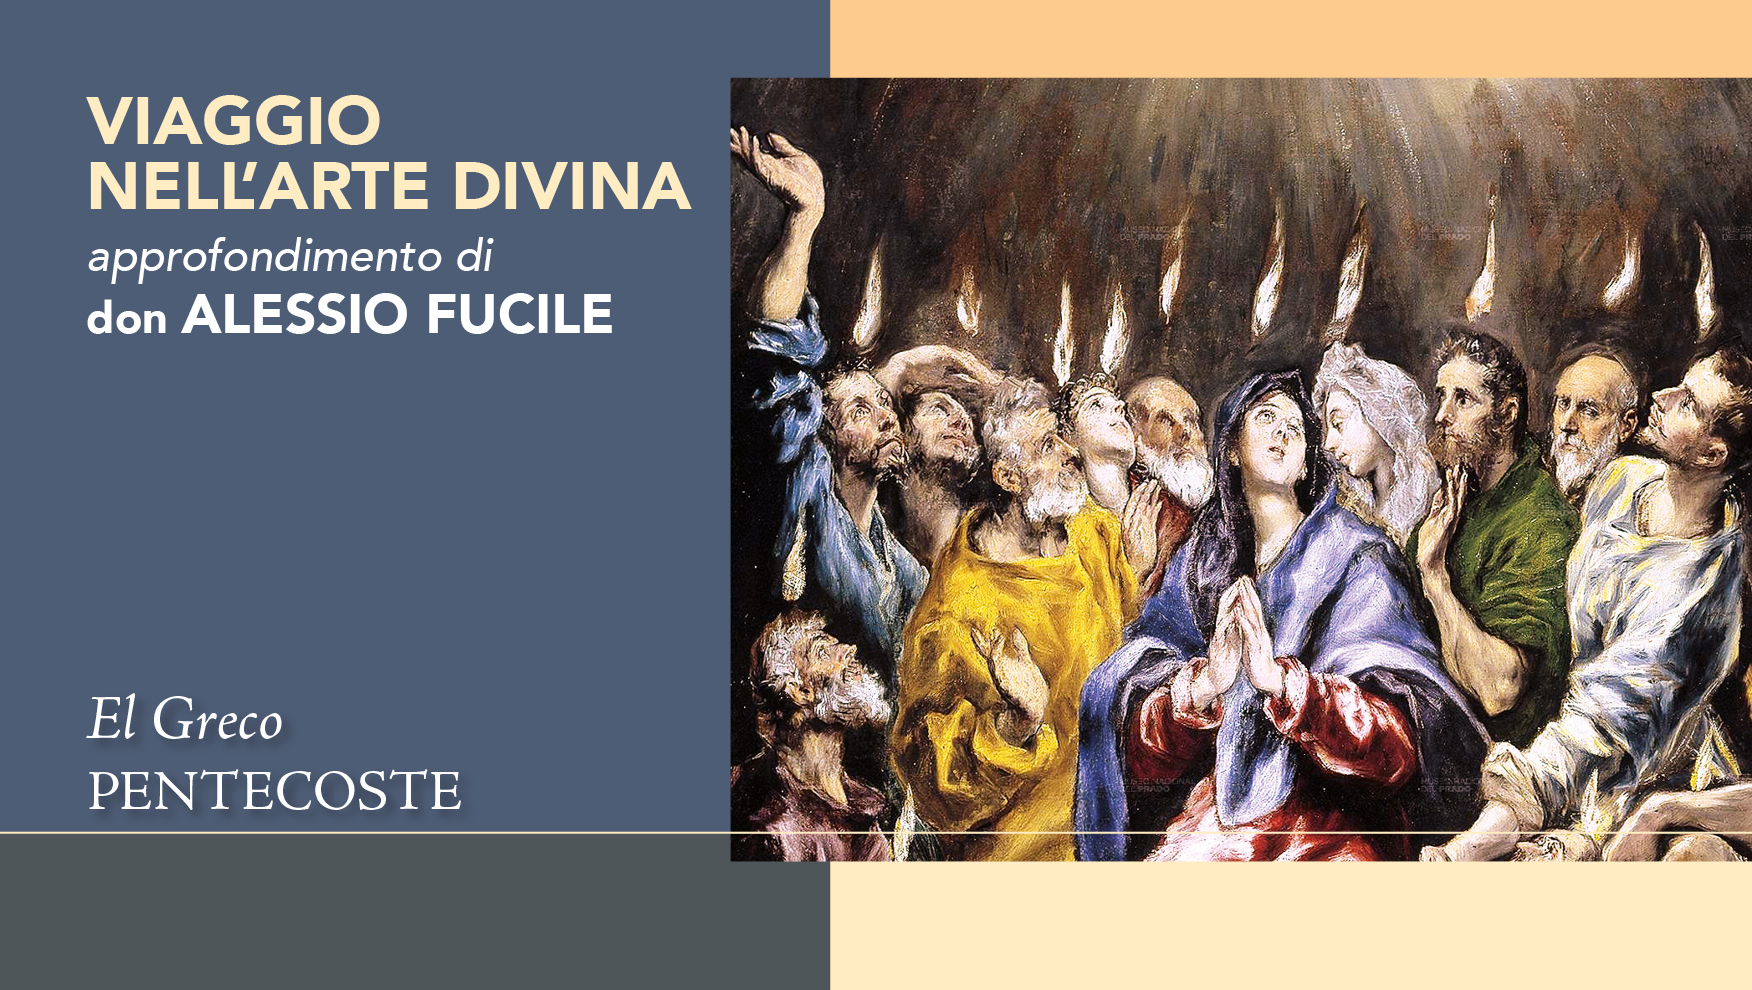 La luce divina della “Pentecoste” di El Greco